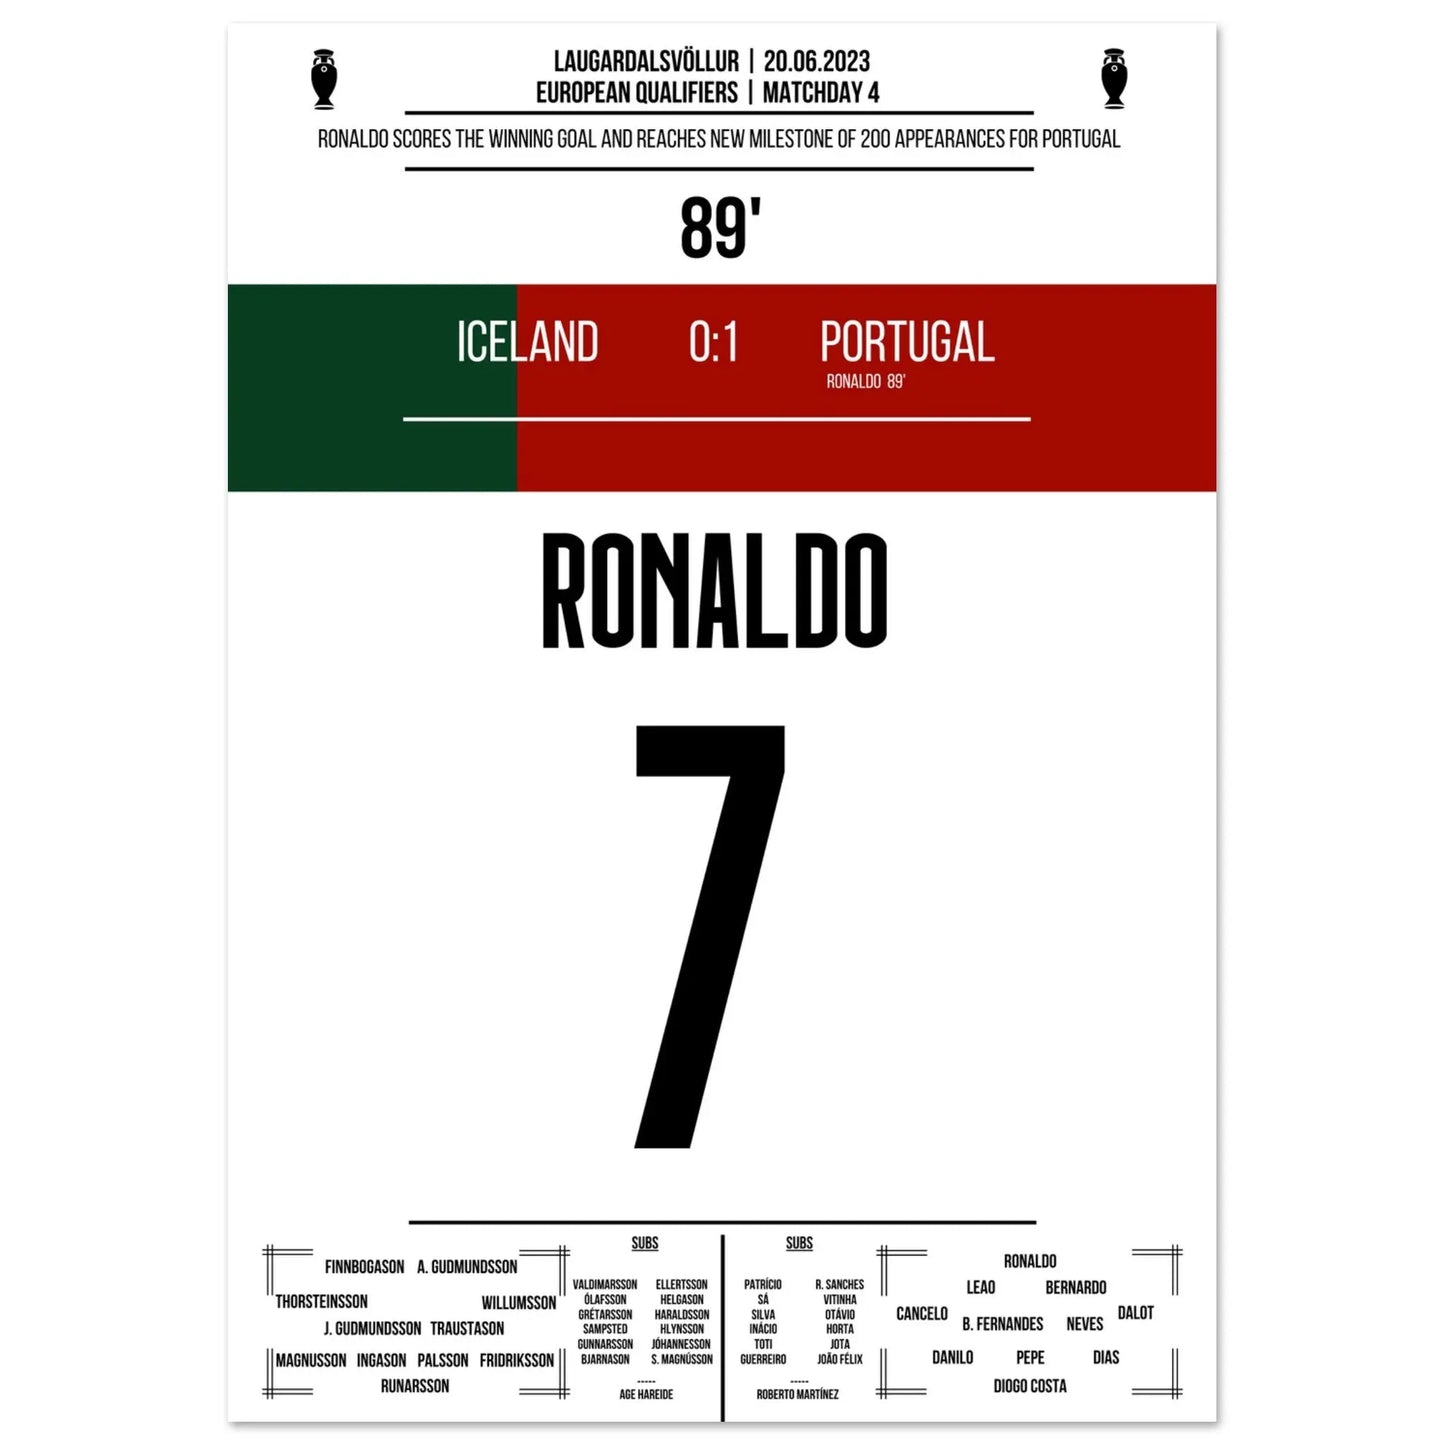 Ronaldo marque le but de la victoire lors de son 200e match avec le Portugal